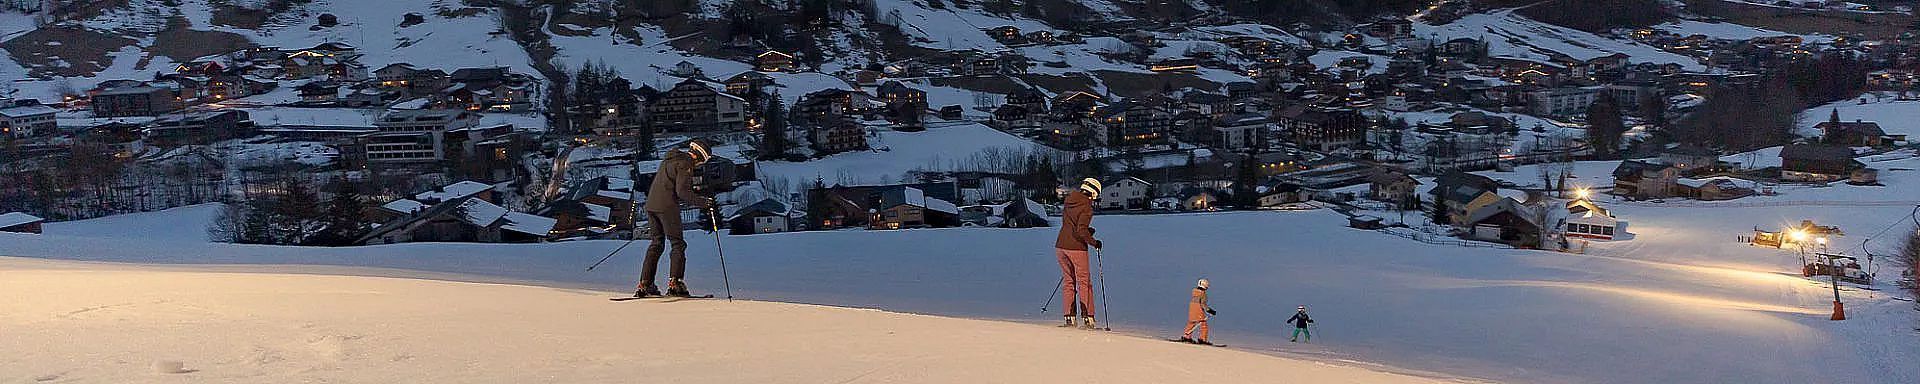 brandnertal-winter-skigebiet-nachtskifahren-familie